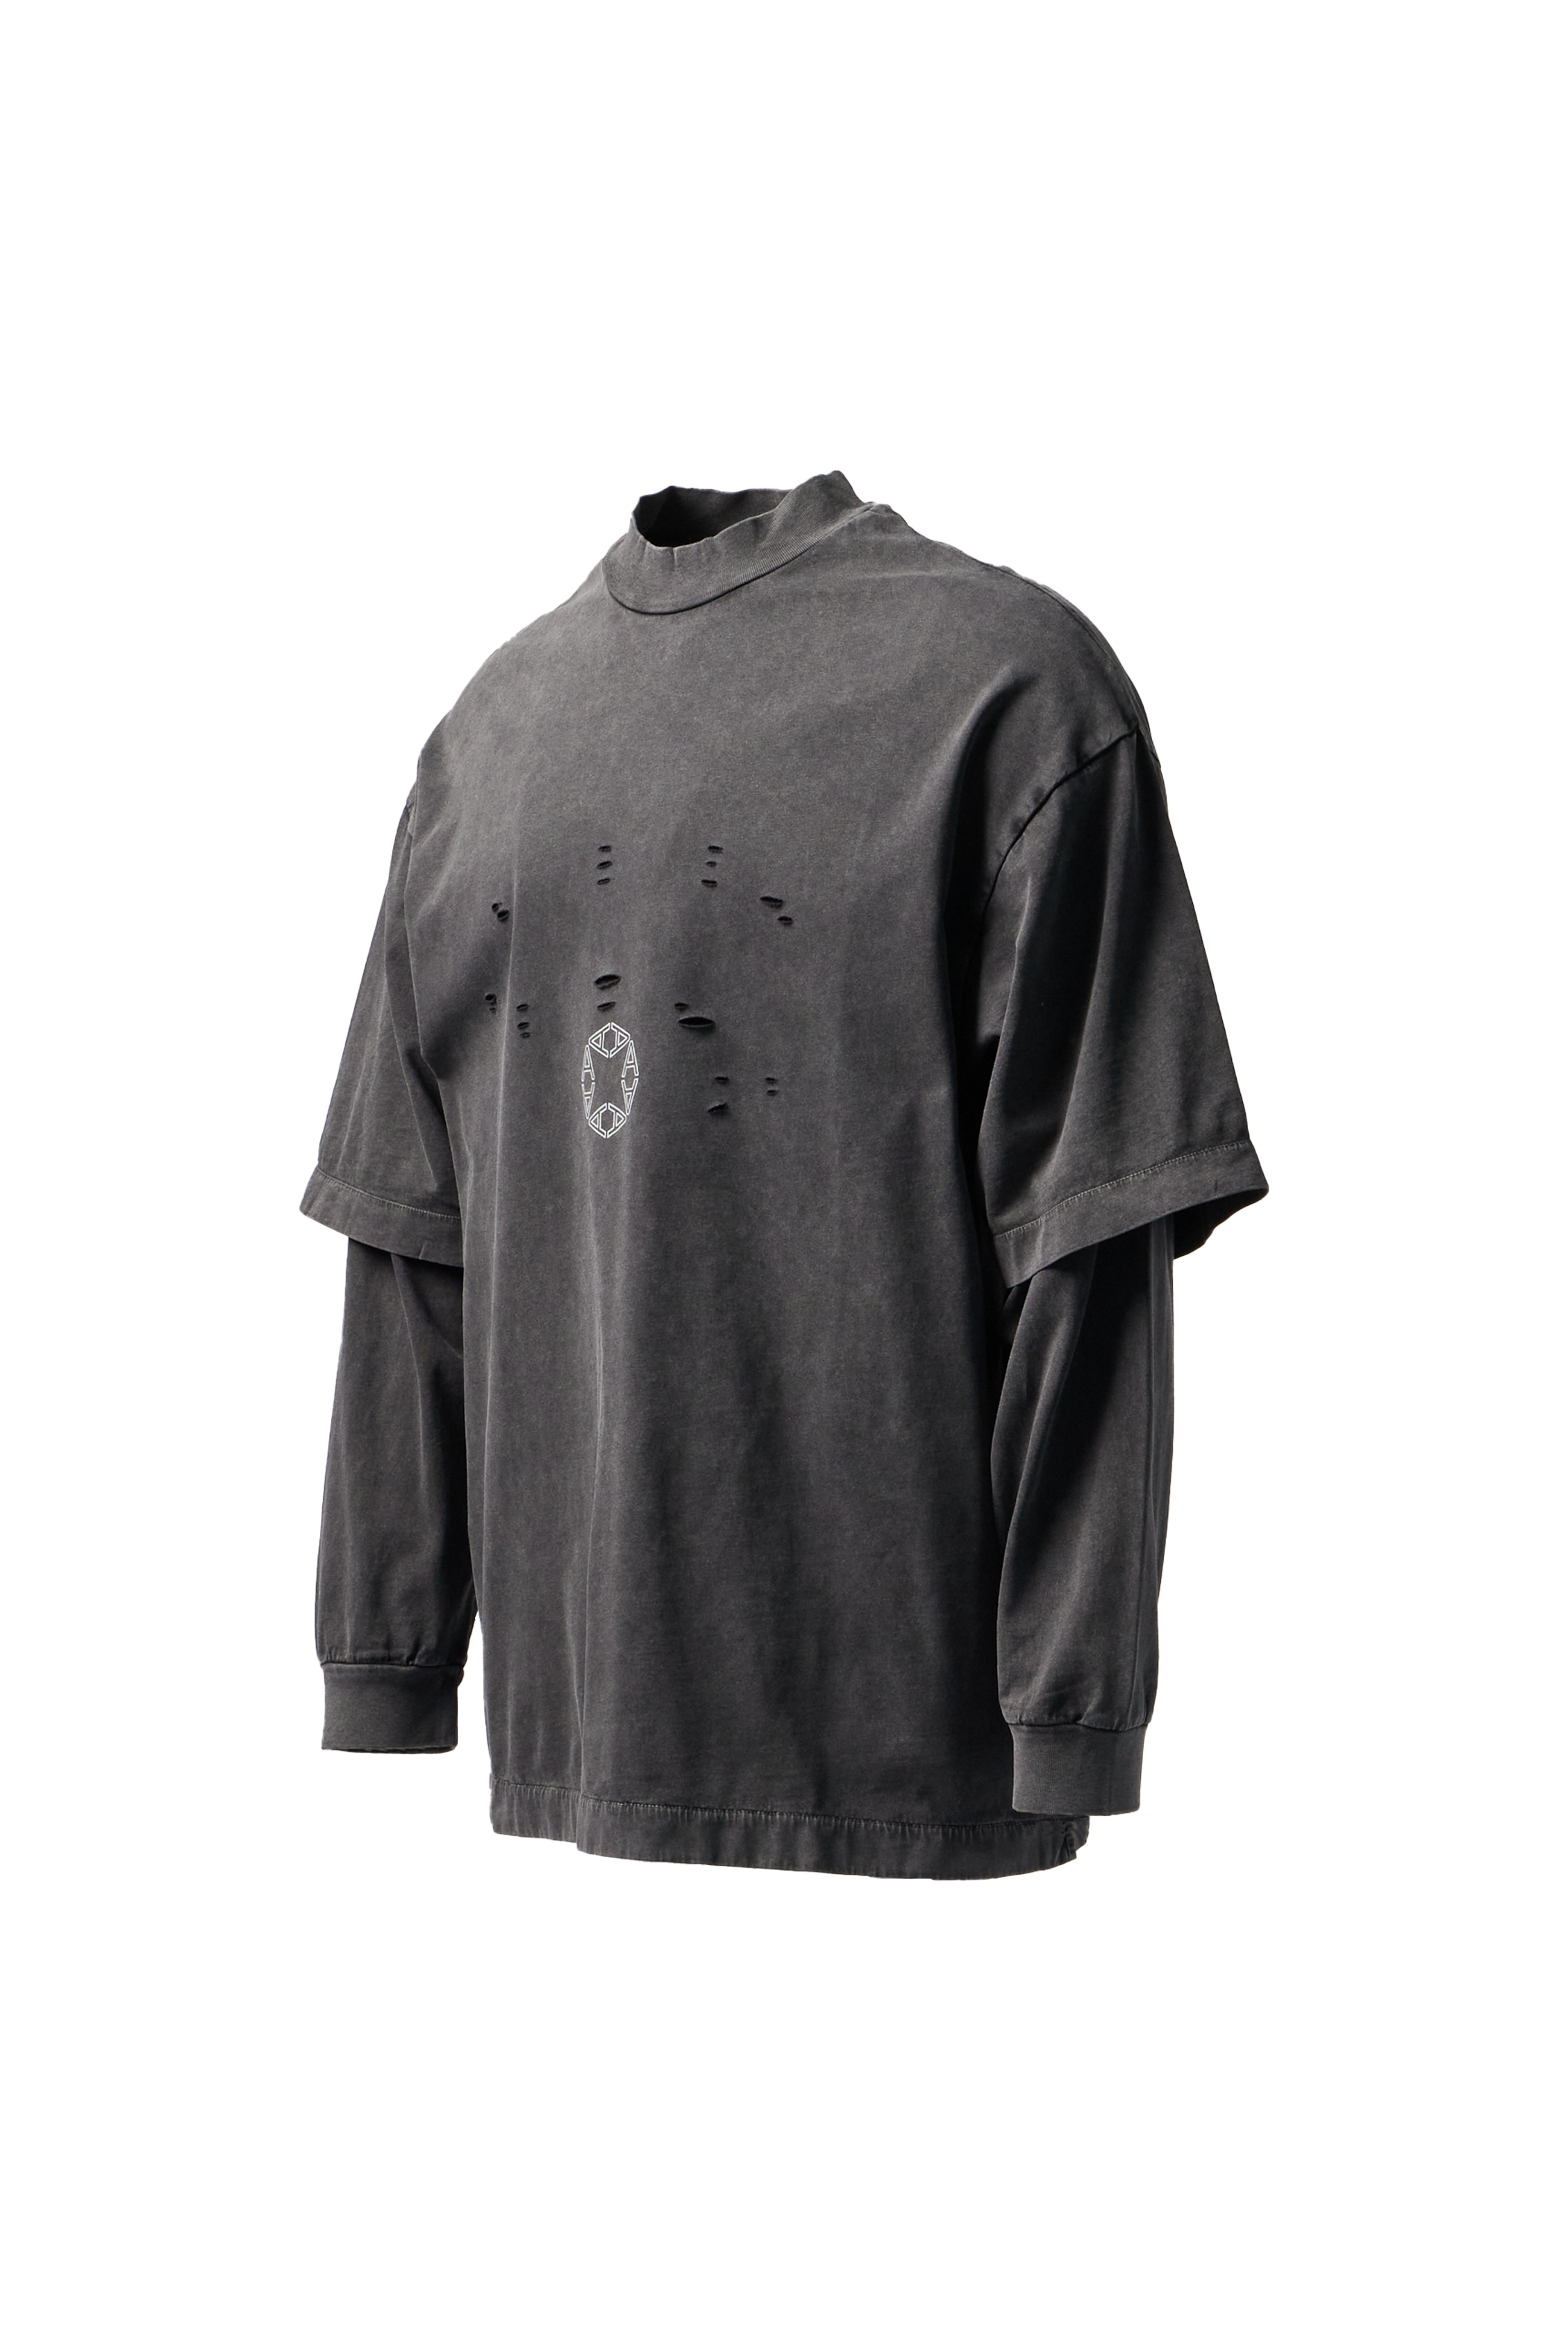 1017 ALYX 9SM - Double Sleeve Logo T-Shirt product image